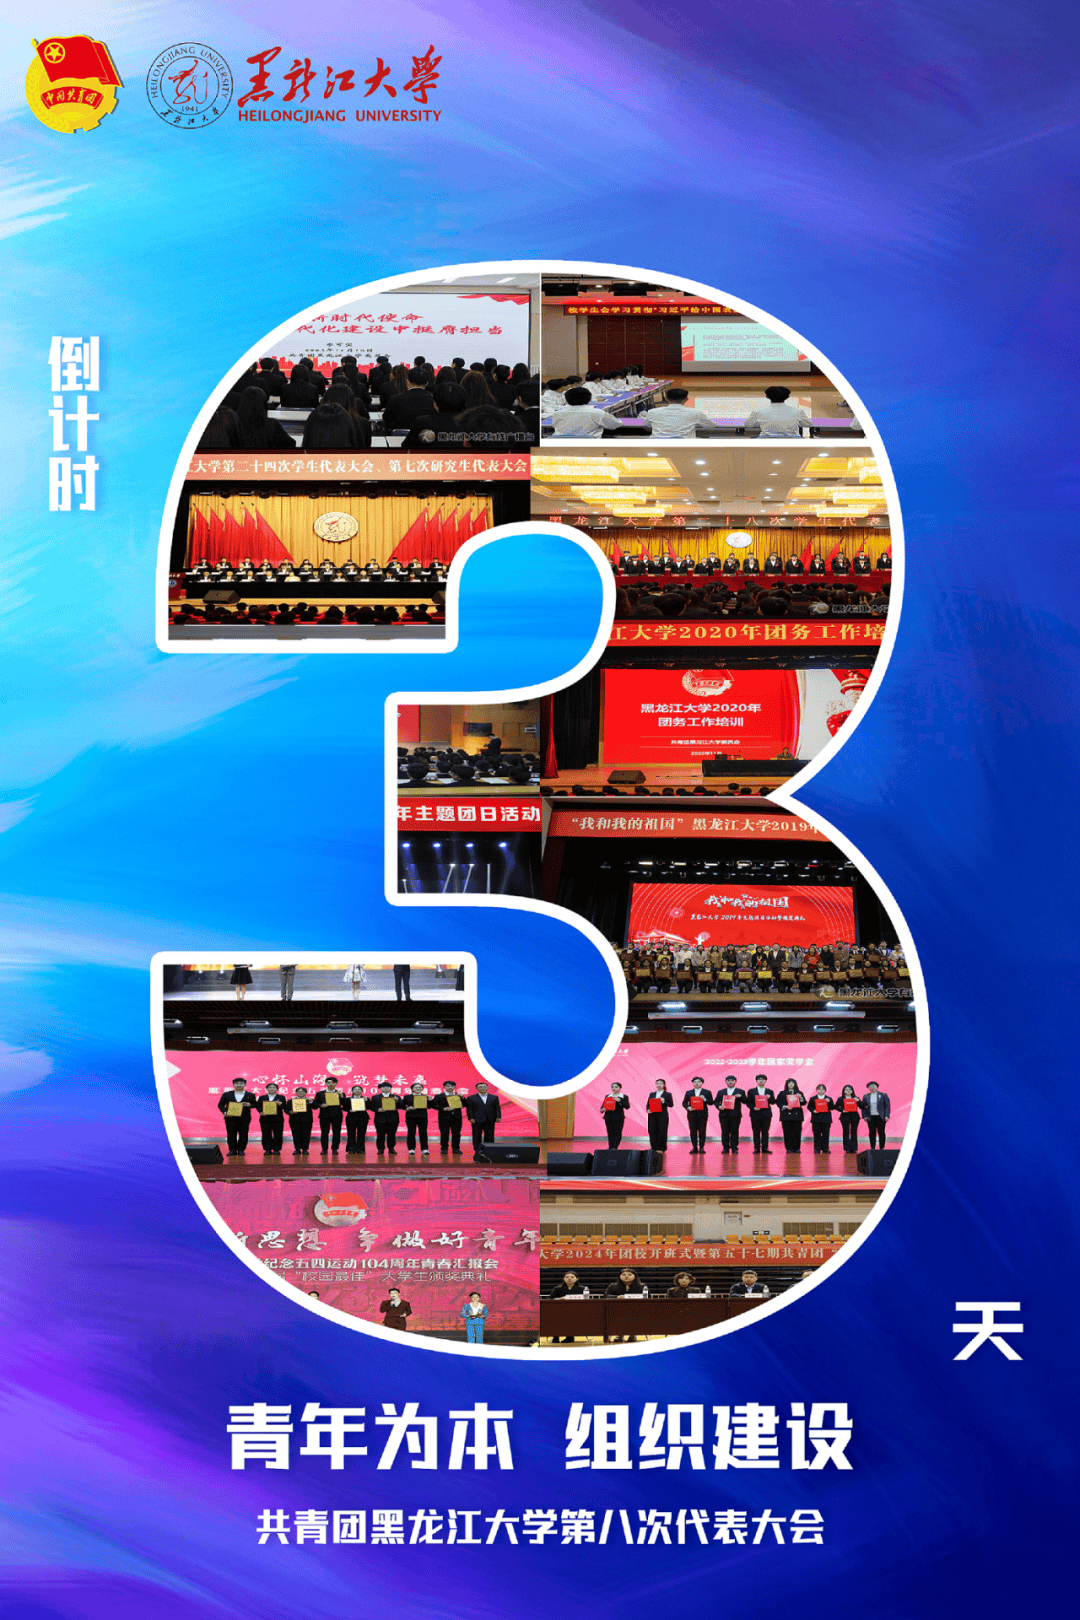 共青团黑龙江大学第八次代表大会将于6月1日召开,北京大学,复旦大学